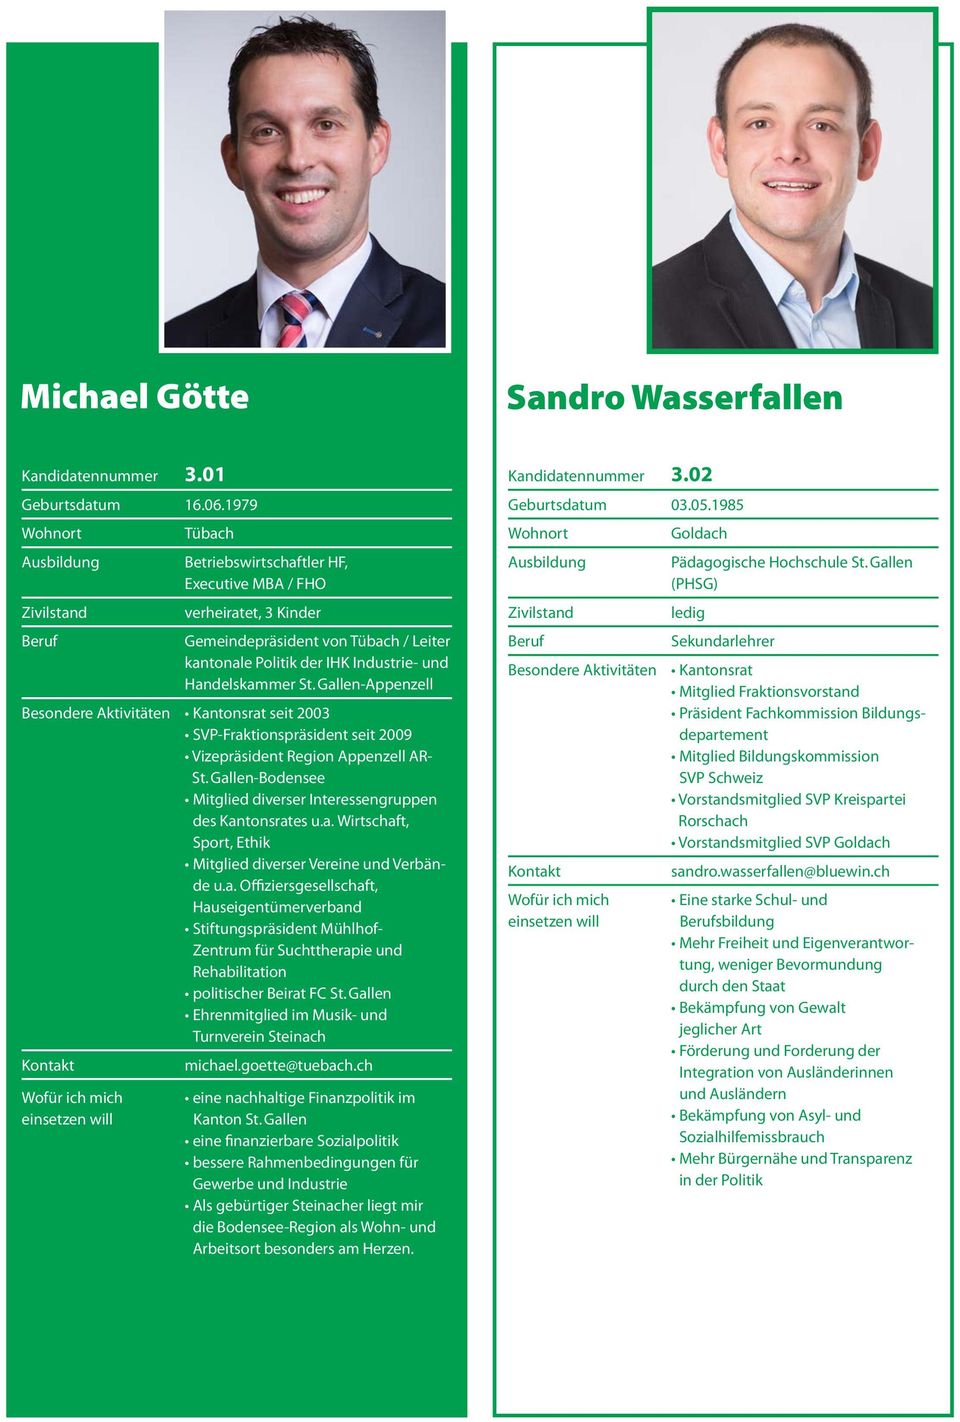 Gallen-Appenzell Besondere Aktivitäten Kantonsrat seit 2003 SVP-Fraktionspräsident seit 2009 Vizepräsident Region Appenzell AR- St.